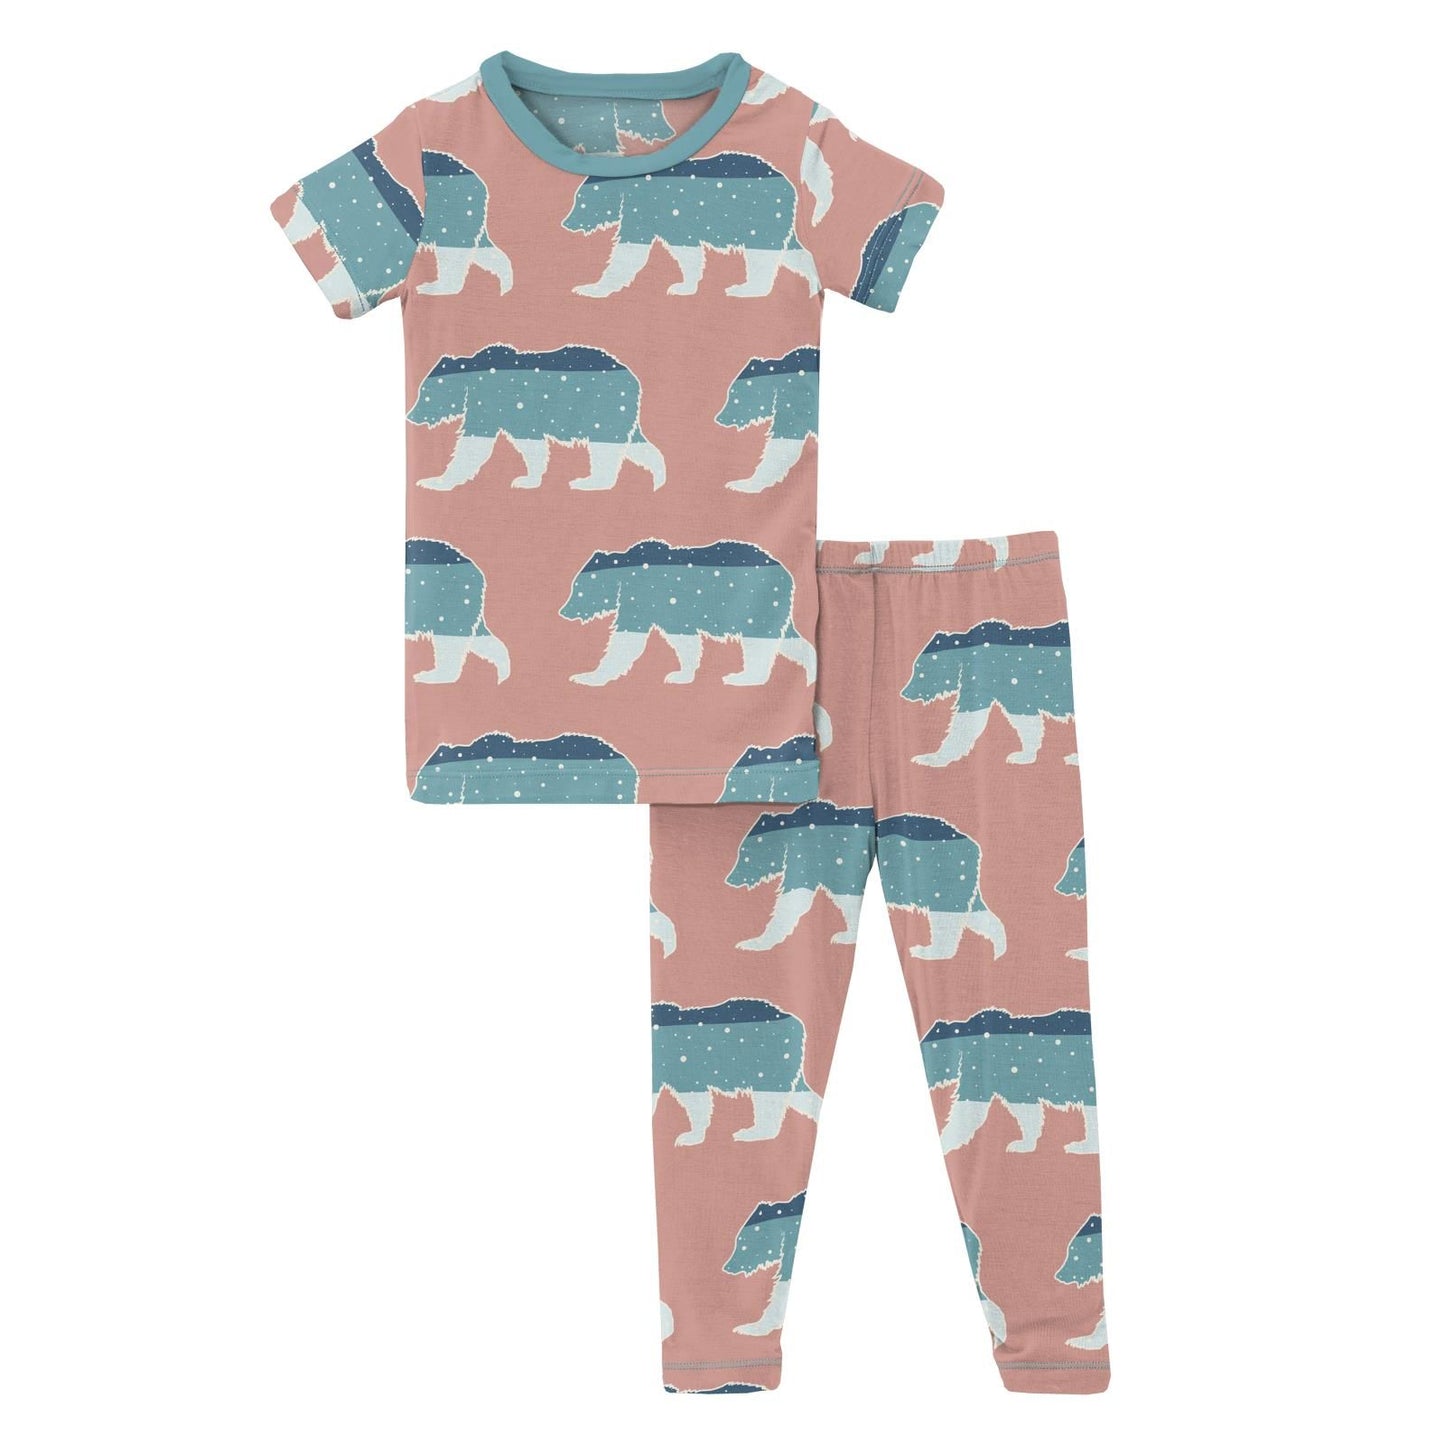 2 Piece Pajama Set (Short Sleeve) - Blush Night Sky Bear